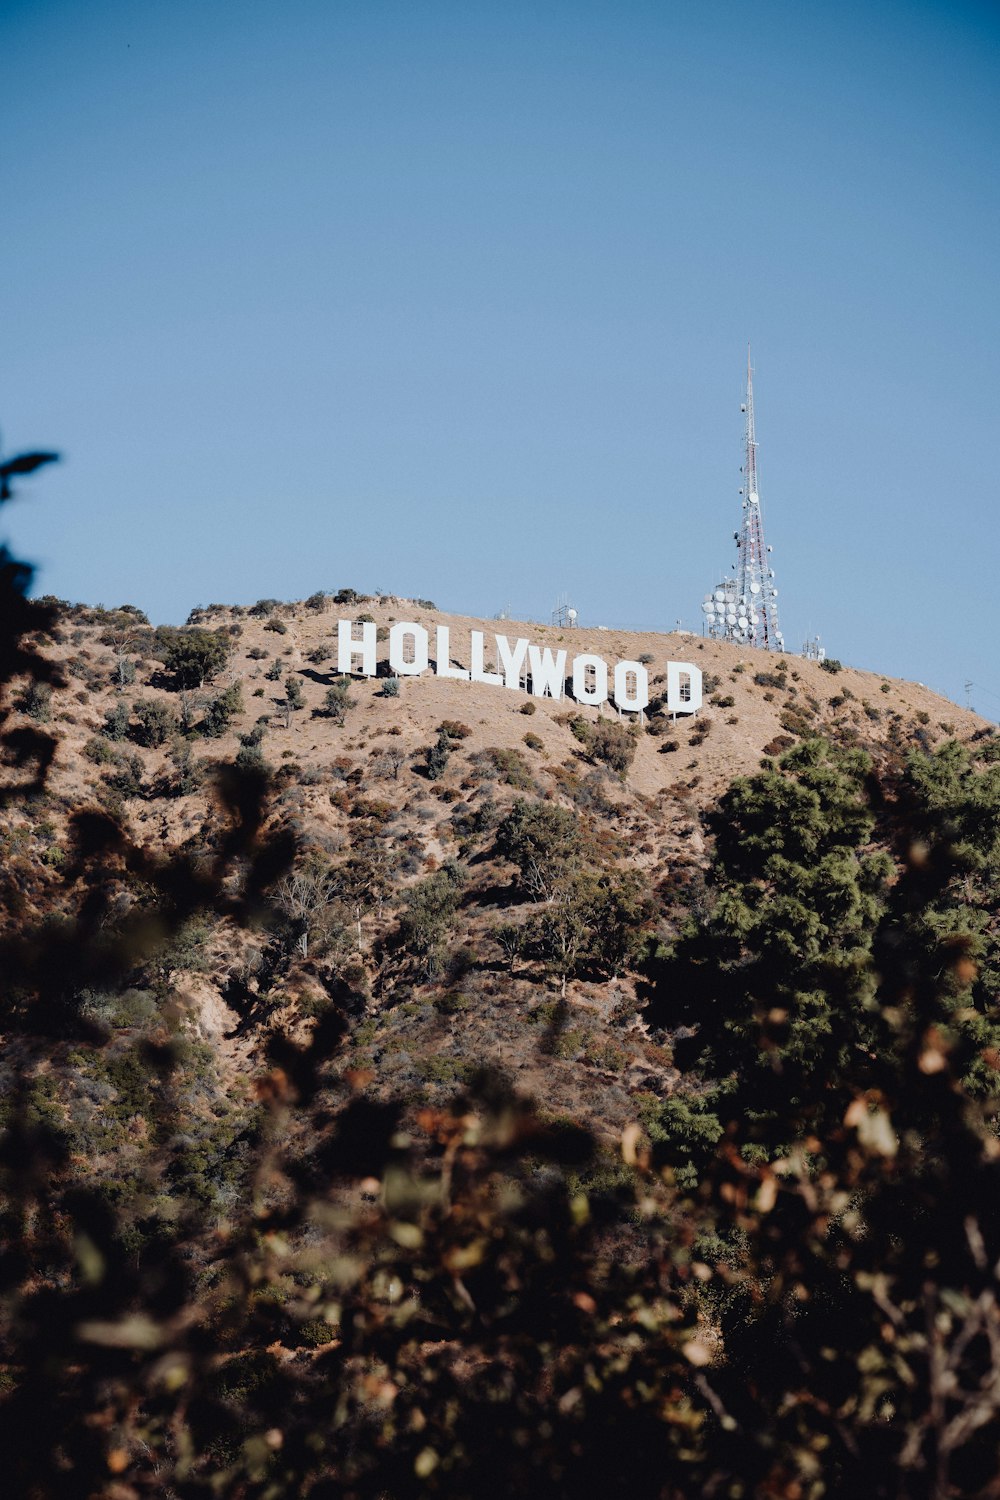 L'insegna di Hollywood è sulla cima di una collina